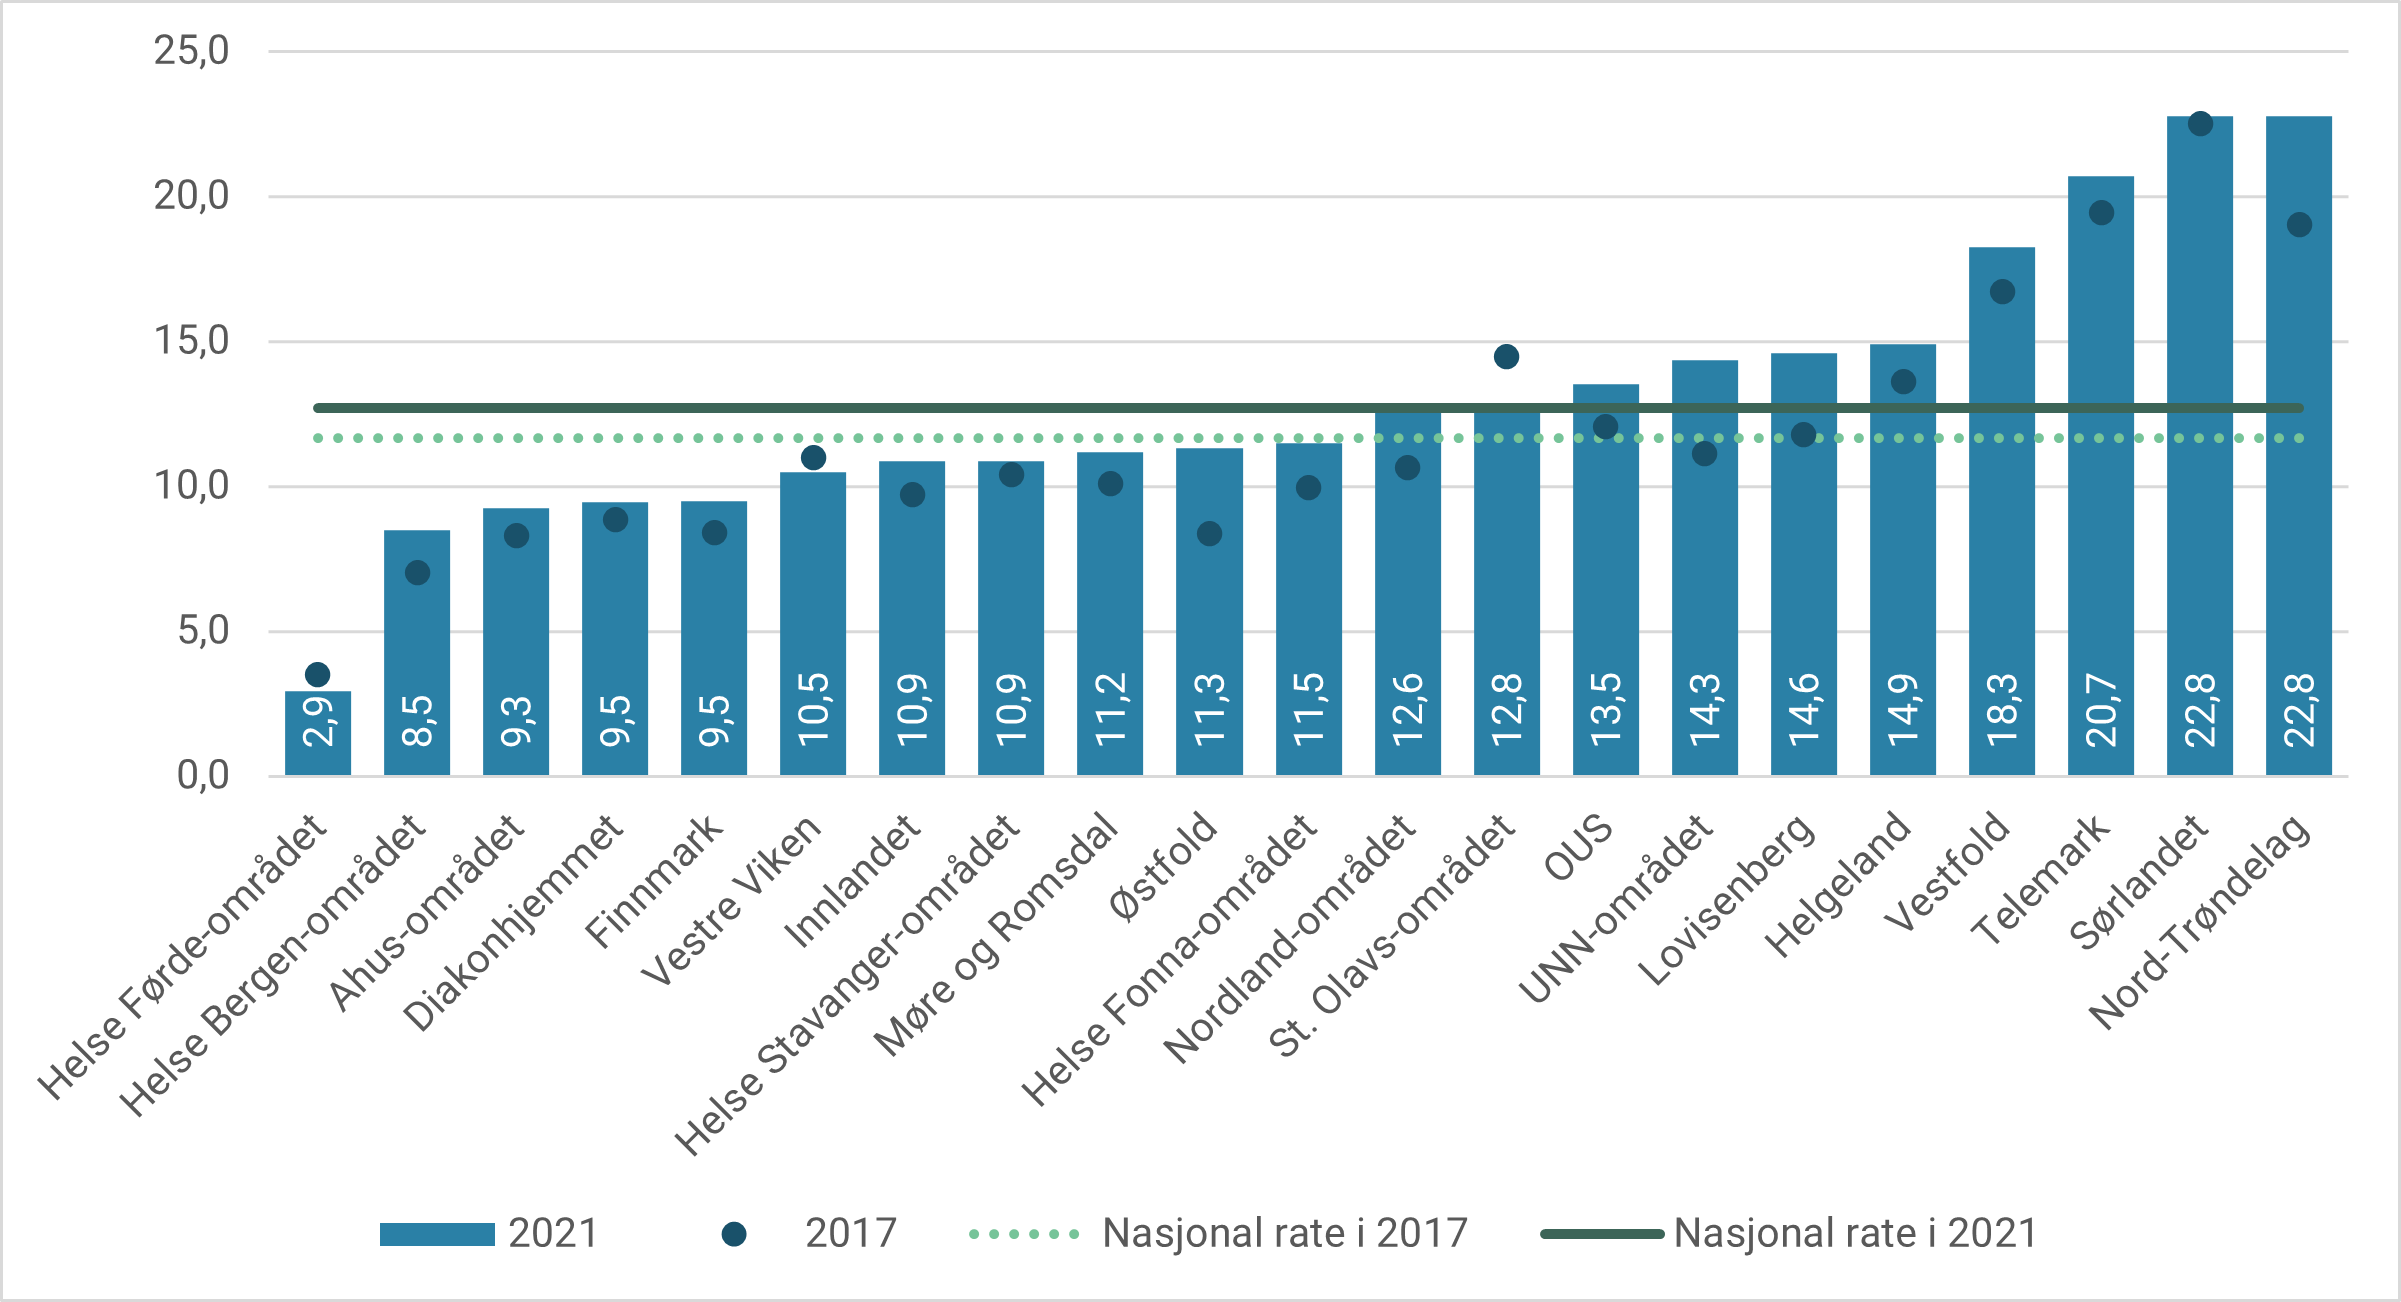 Figur 3.3: Antall habiliteringspasienter per 1 000 innbyggere under 18 år etter foretaksområde. 2017 og 2021.